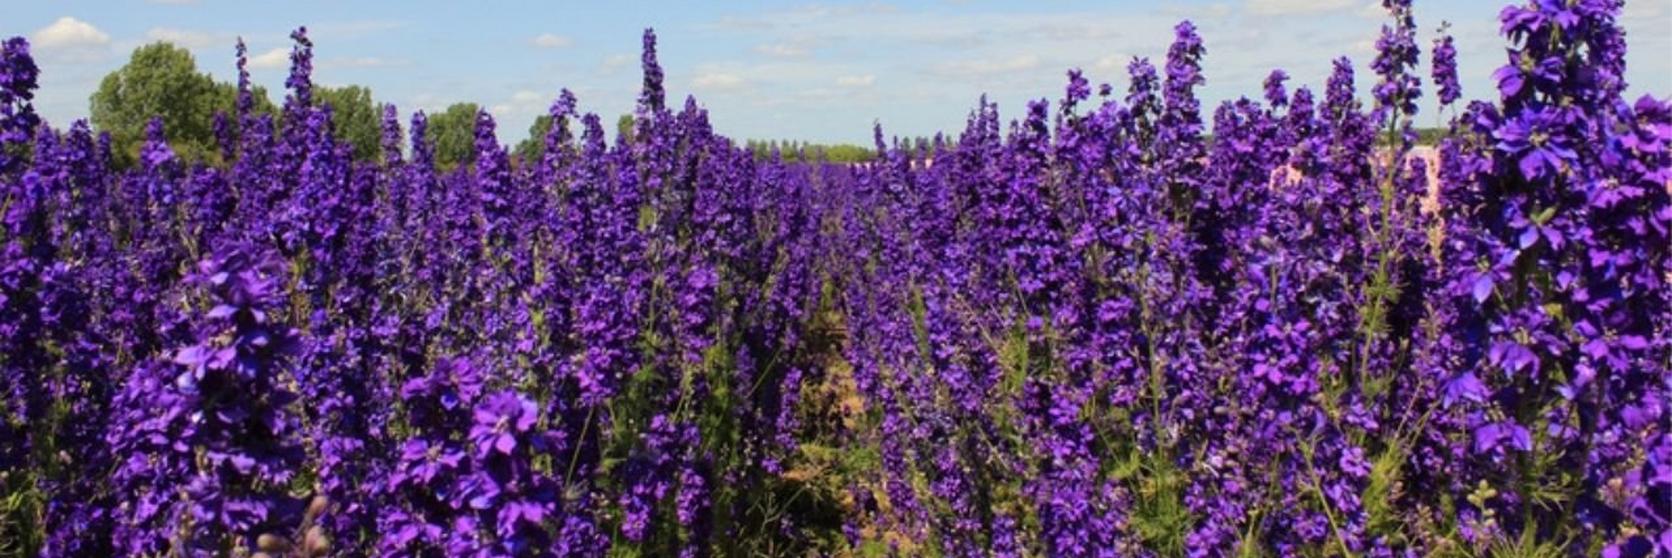 Delphinium-purple-field